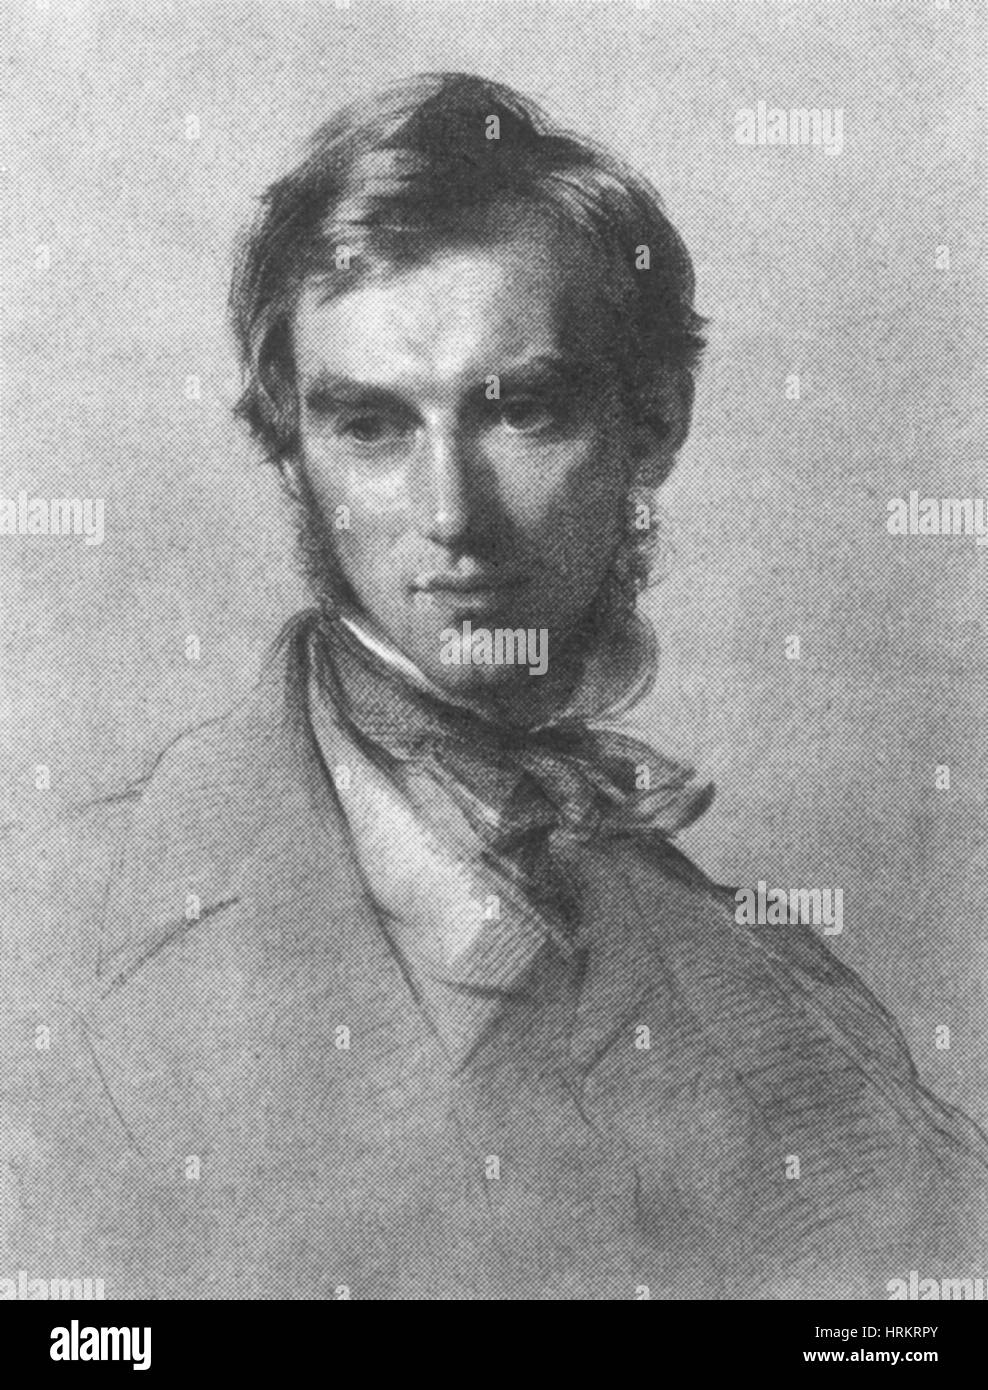 Joseph Dalton Hooker, English Botanist, 1855 Stock Photo